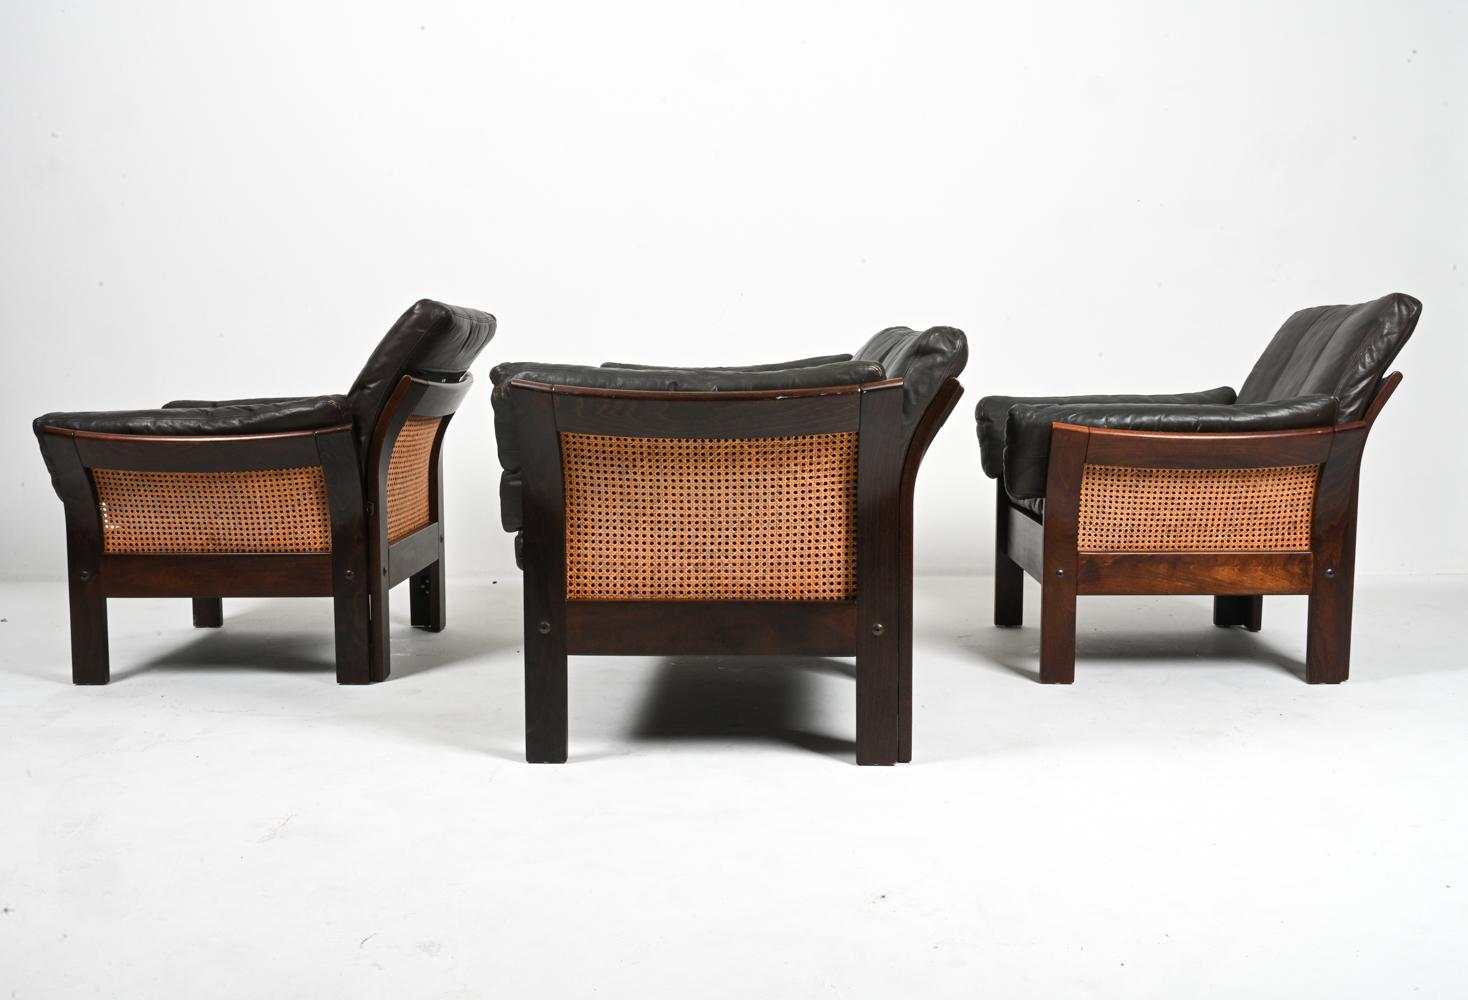 Cuir Suite de sièges danoises de 3 pièces en hêtre, canne et cuir, attribuée à Georg Thams en vente